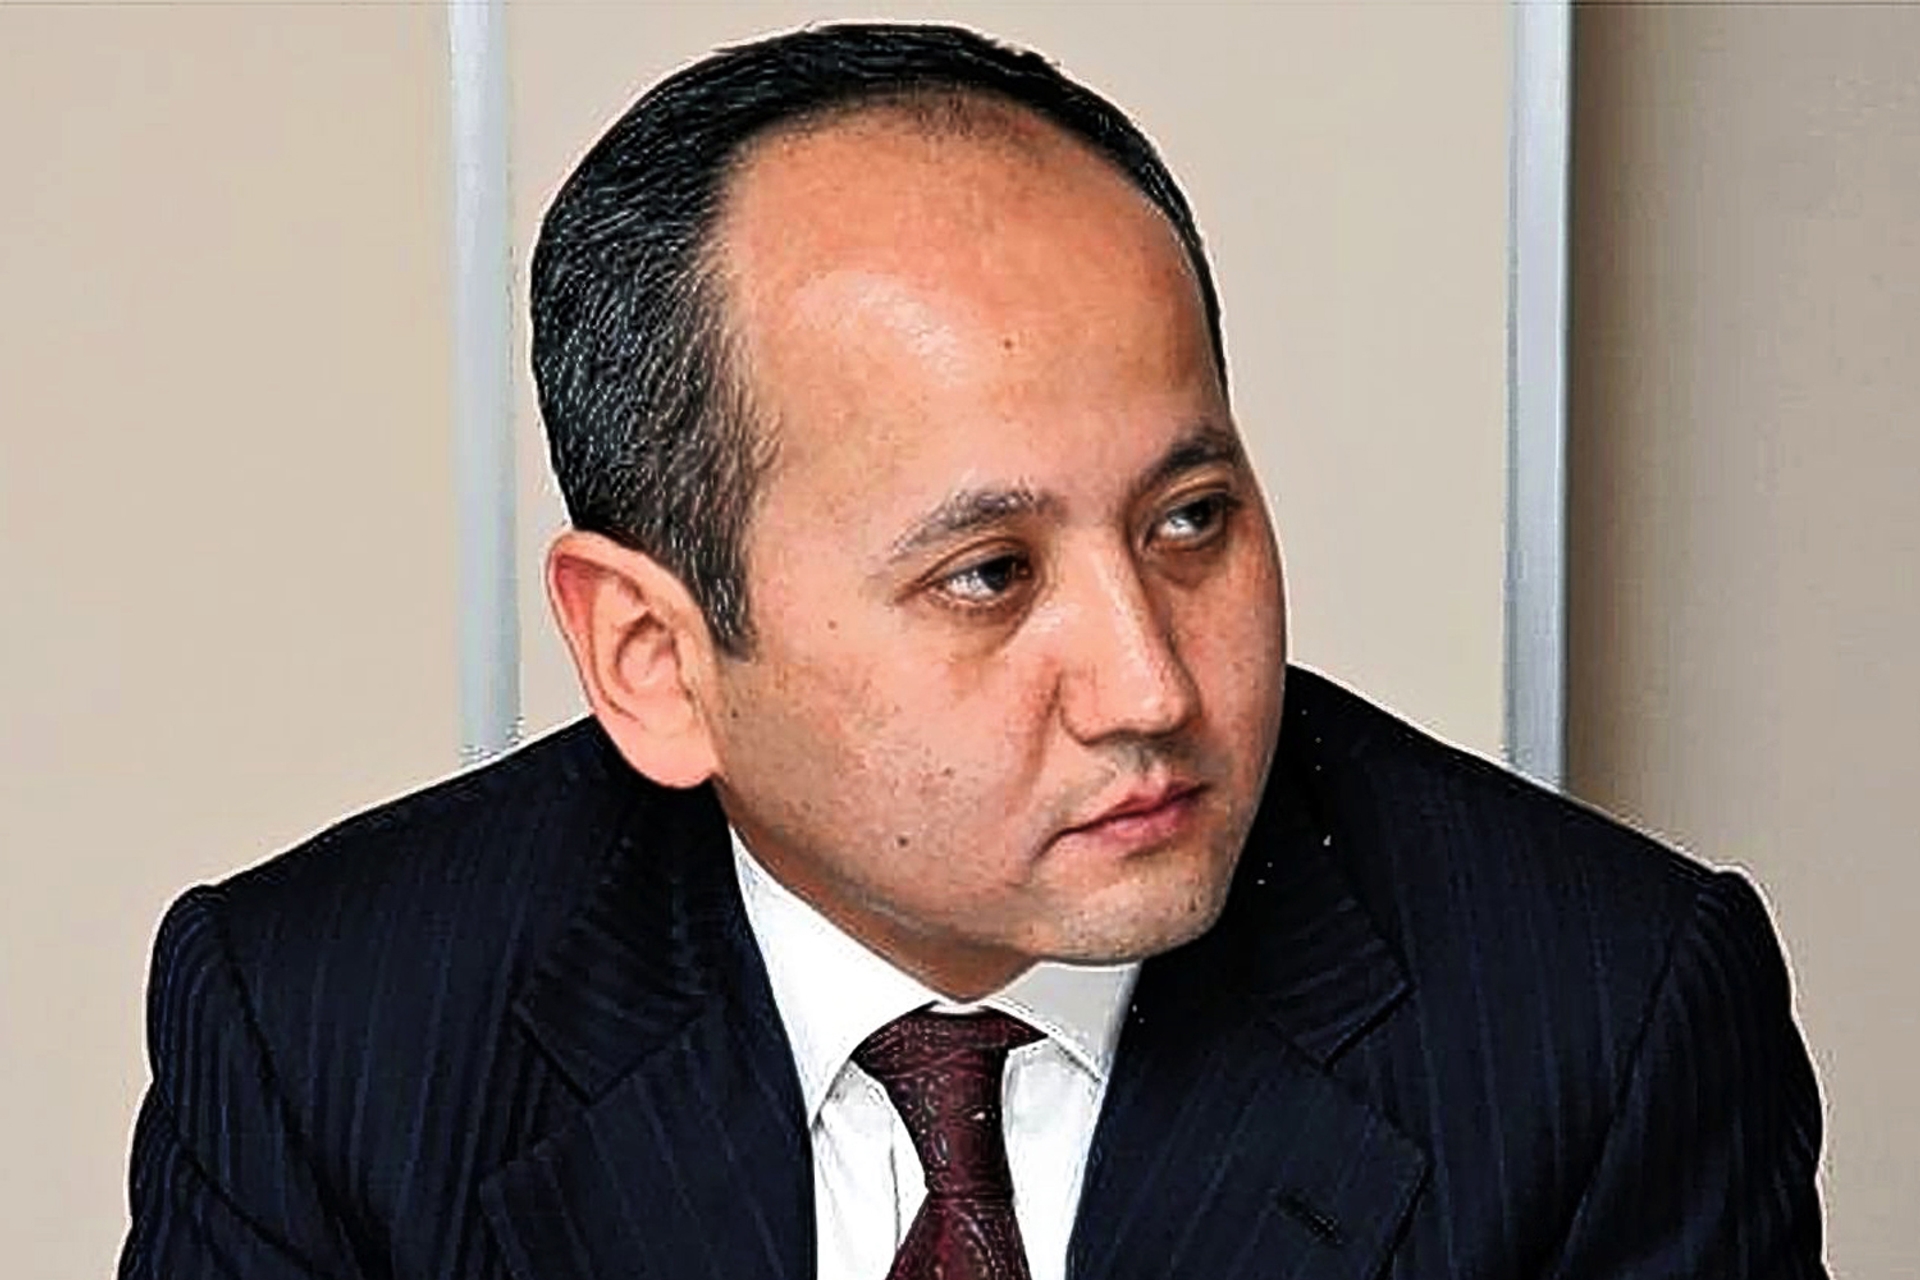 Mukhtar Ablyazov